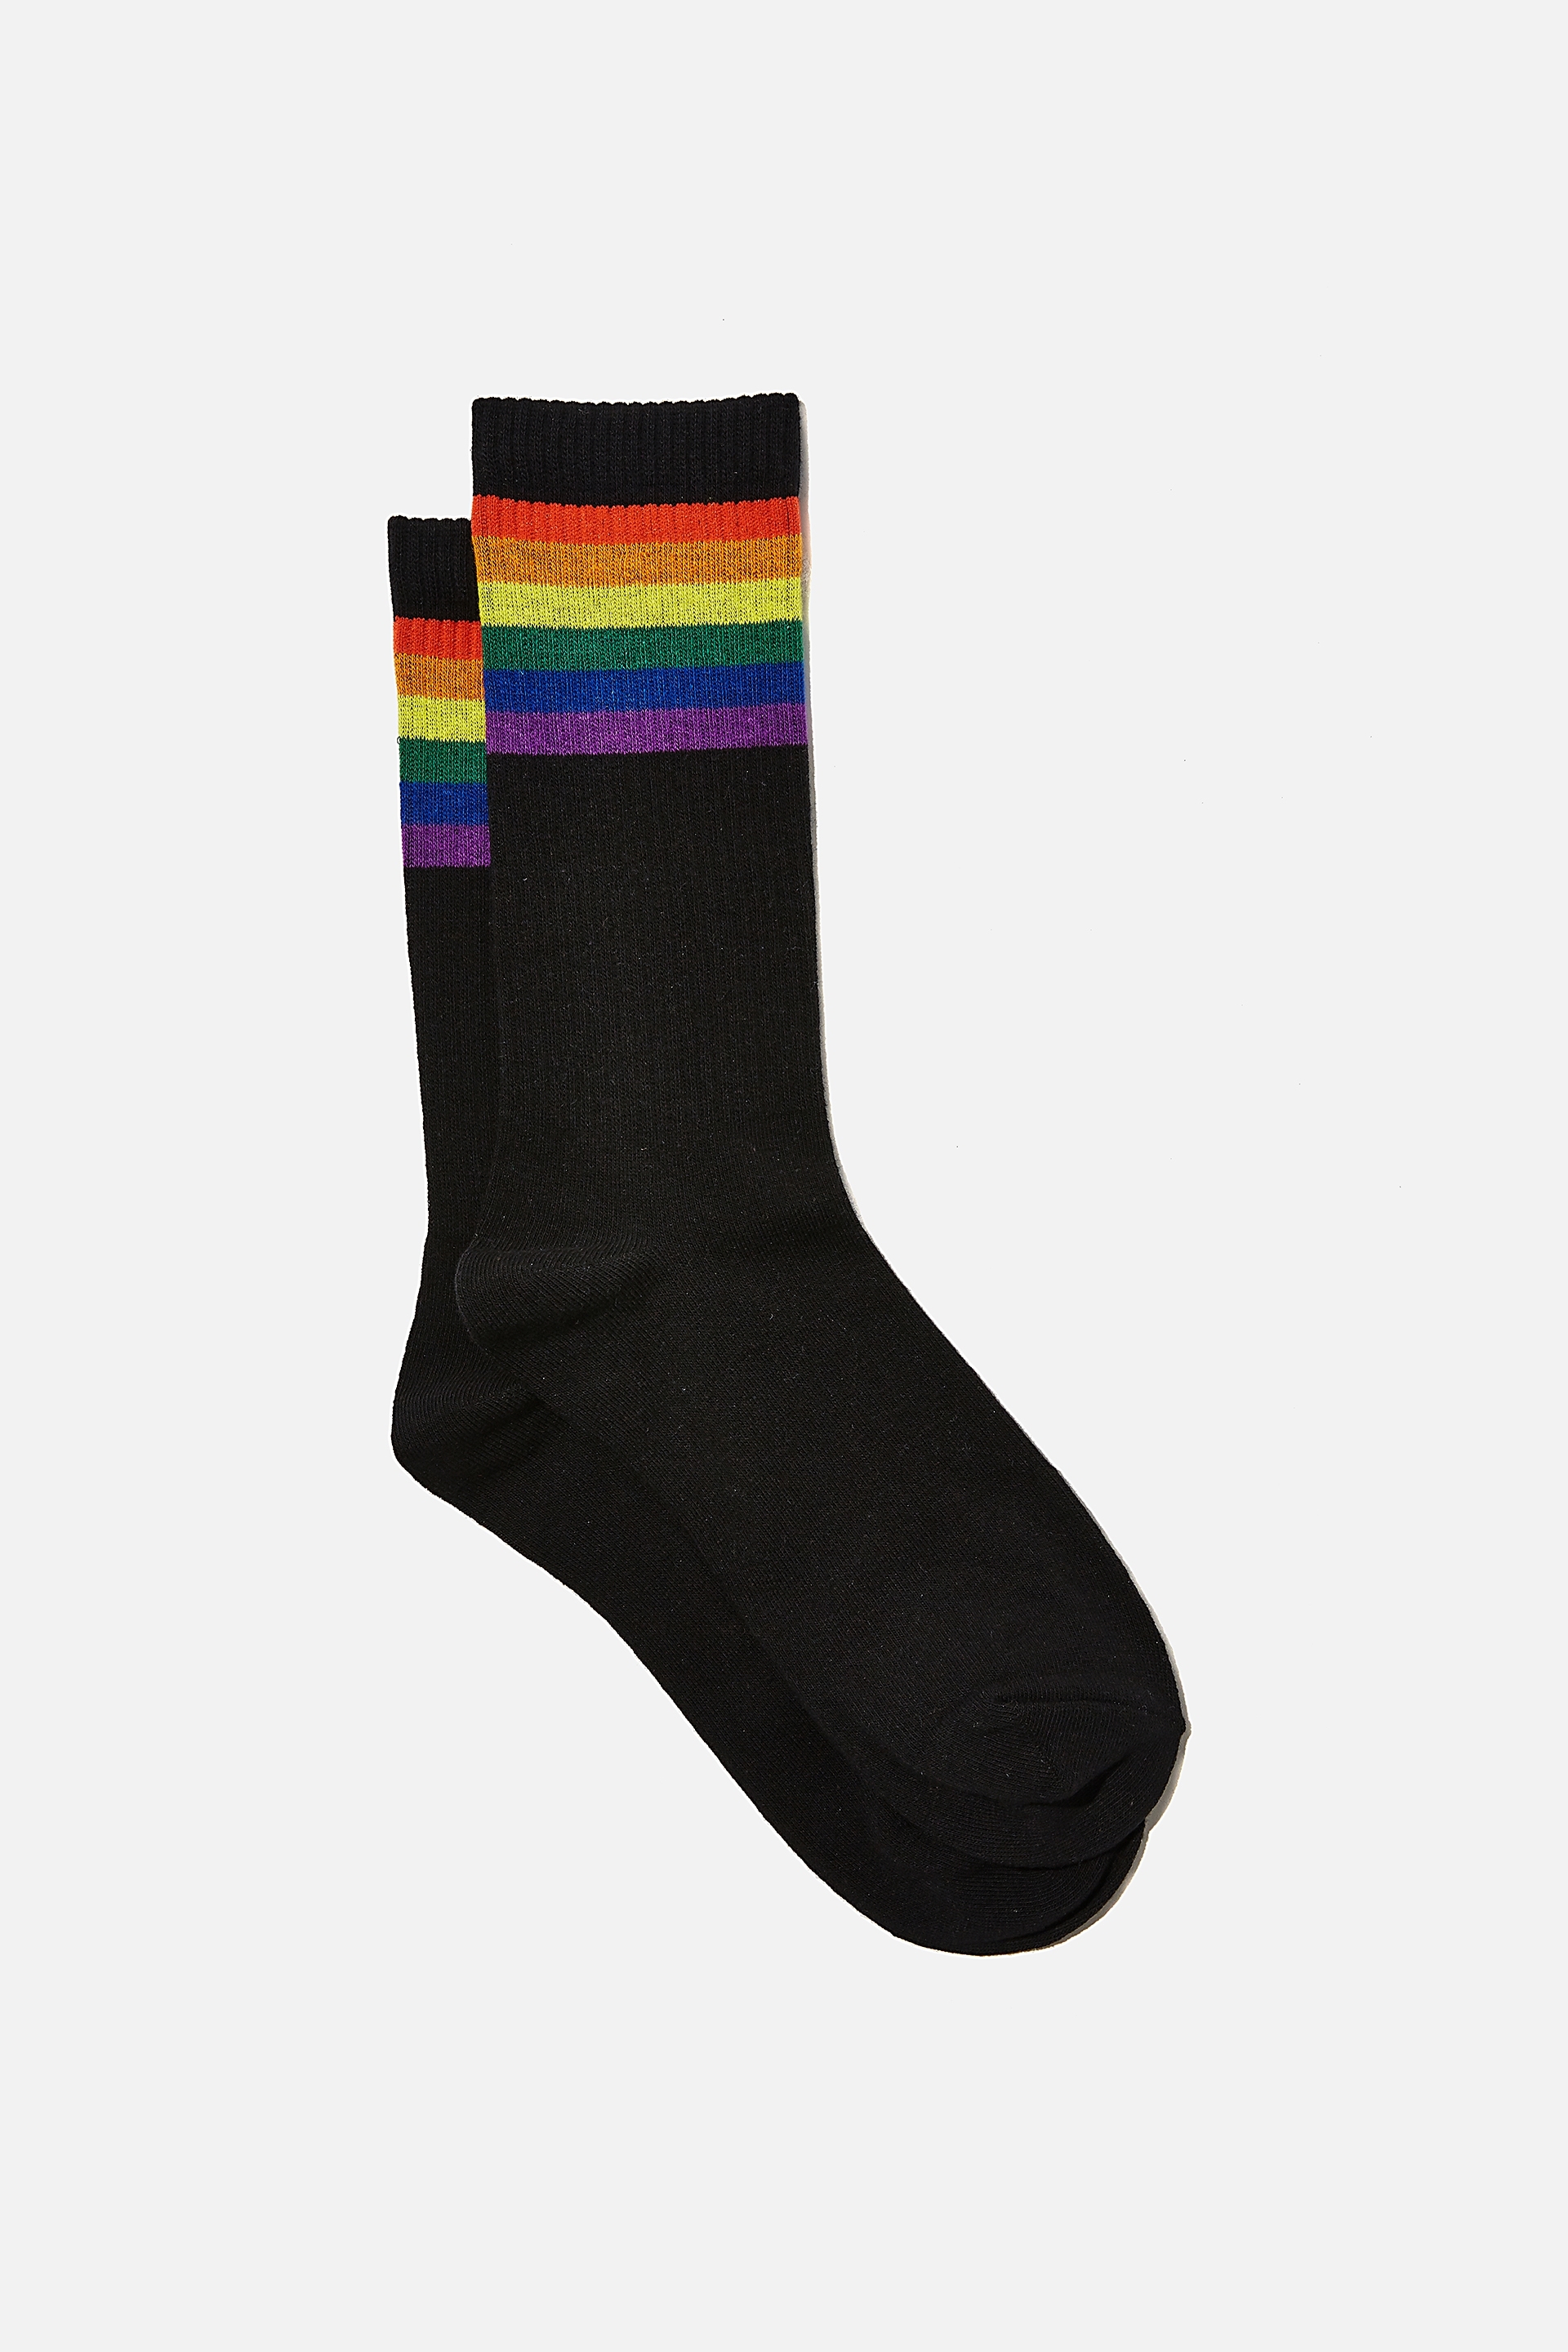 Typo - Socks - Rainbow tube black